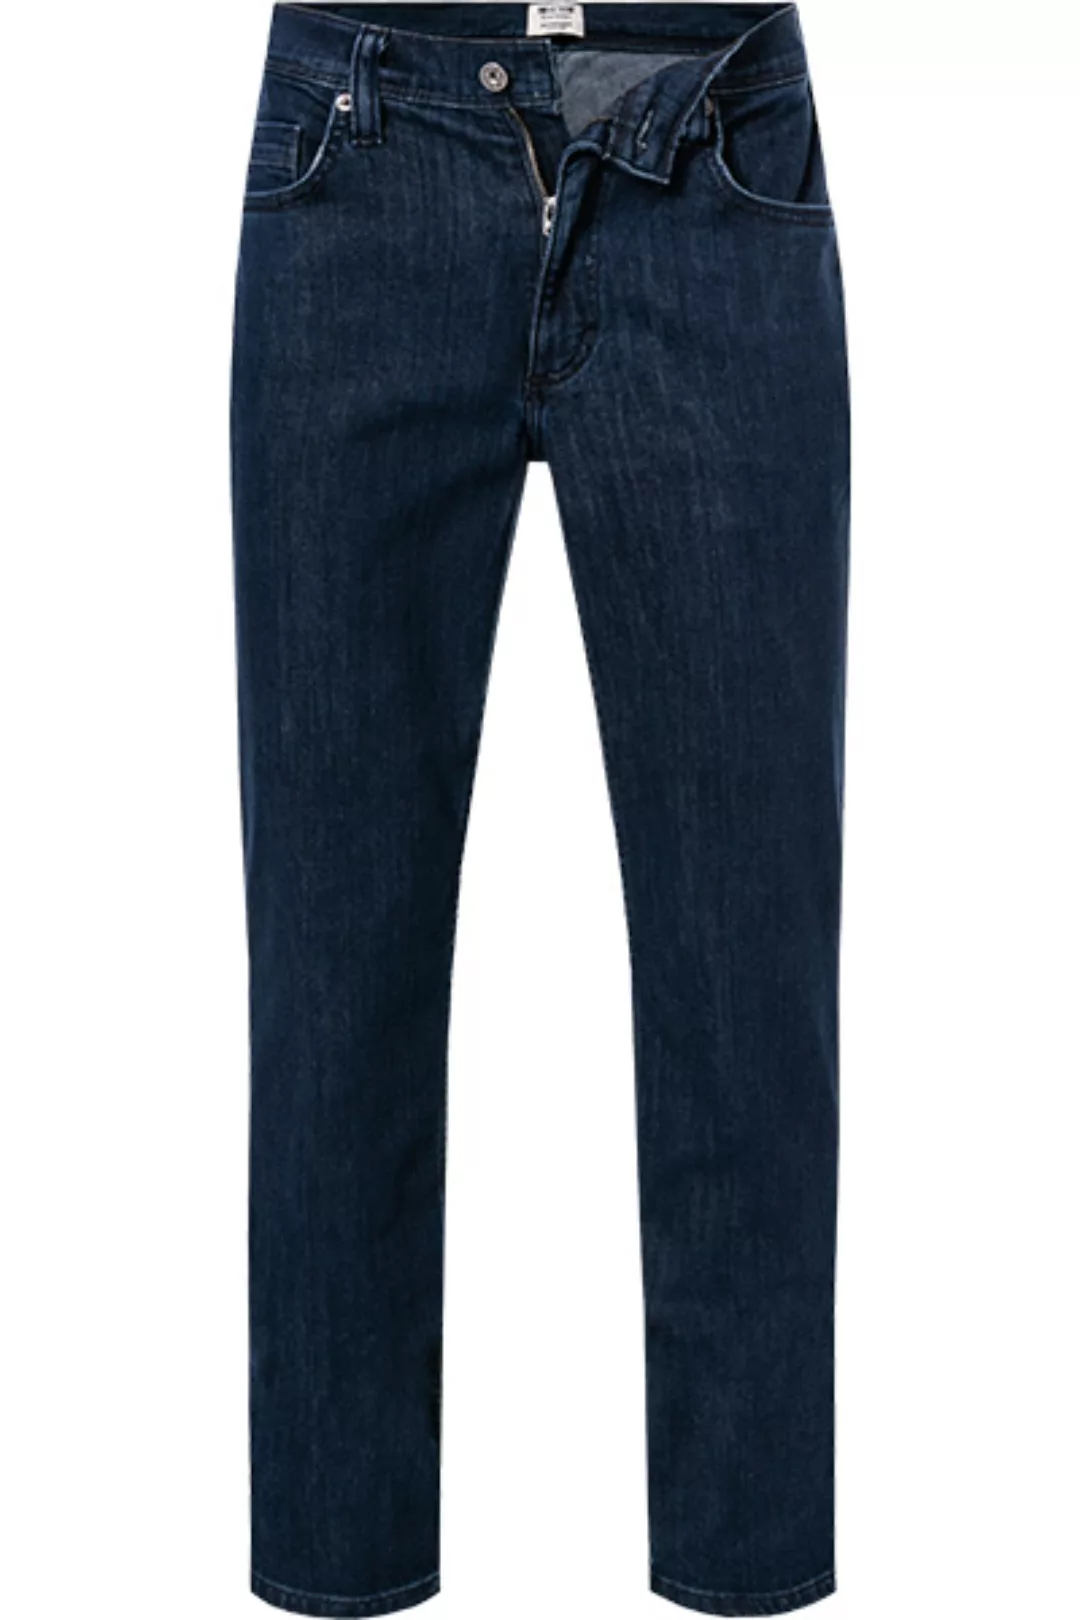 MUSTANG Jeans 1011156/5000/880 günstig online kaufen